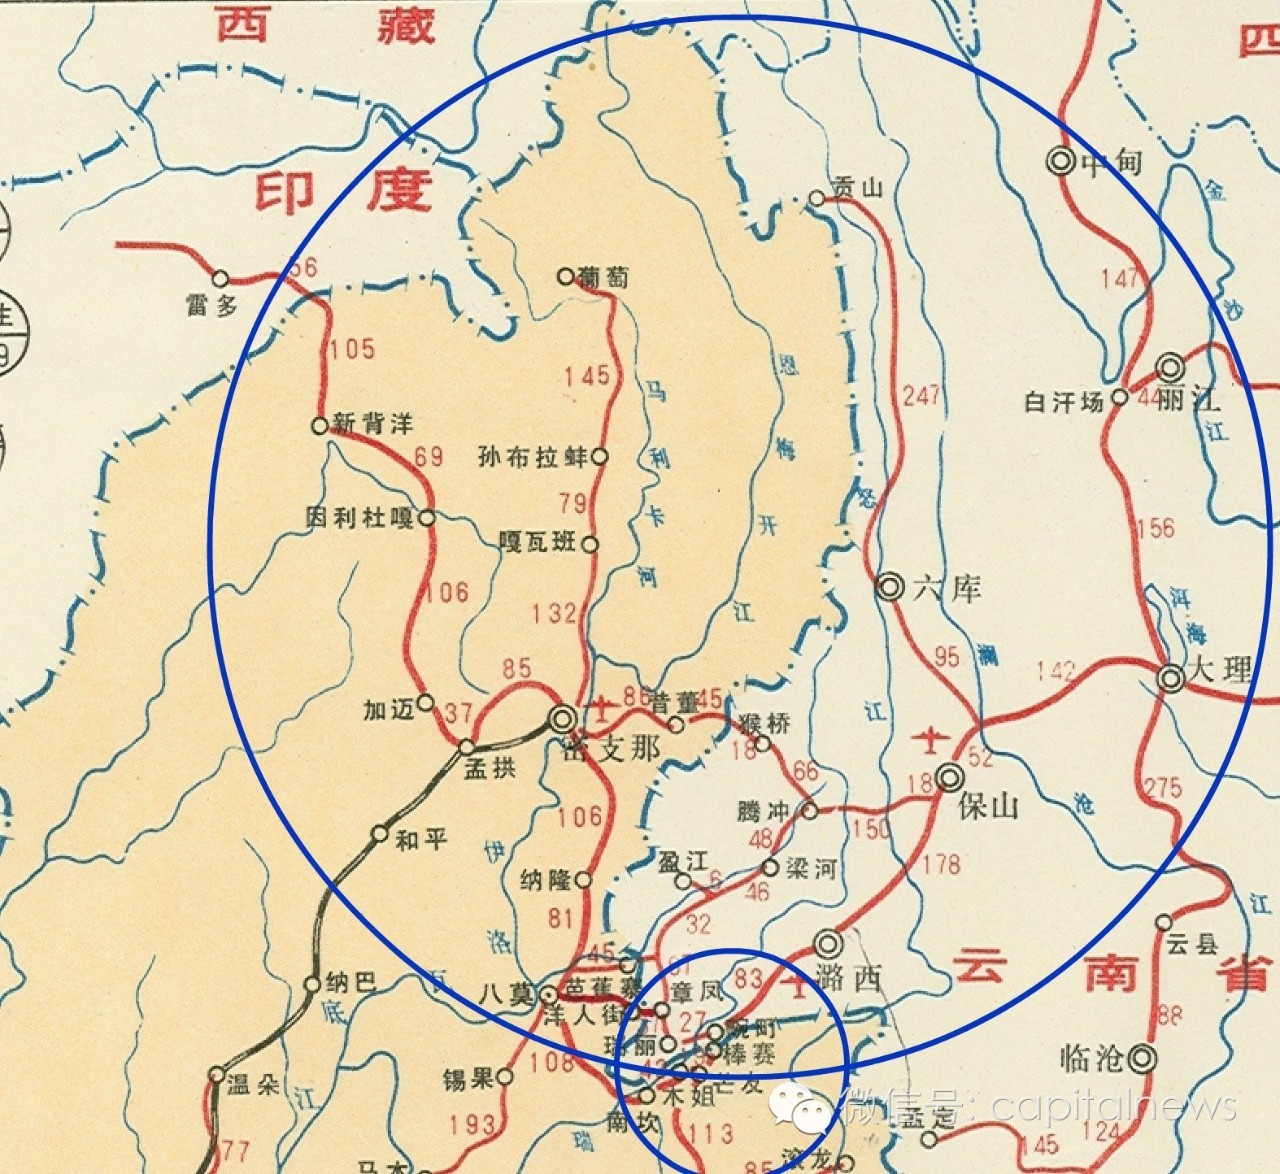 从大范围(图中大蓝圈)上讲,这里叫做克钦邦,其北部区域是中国,缅甸